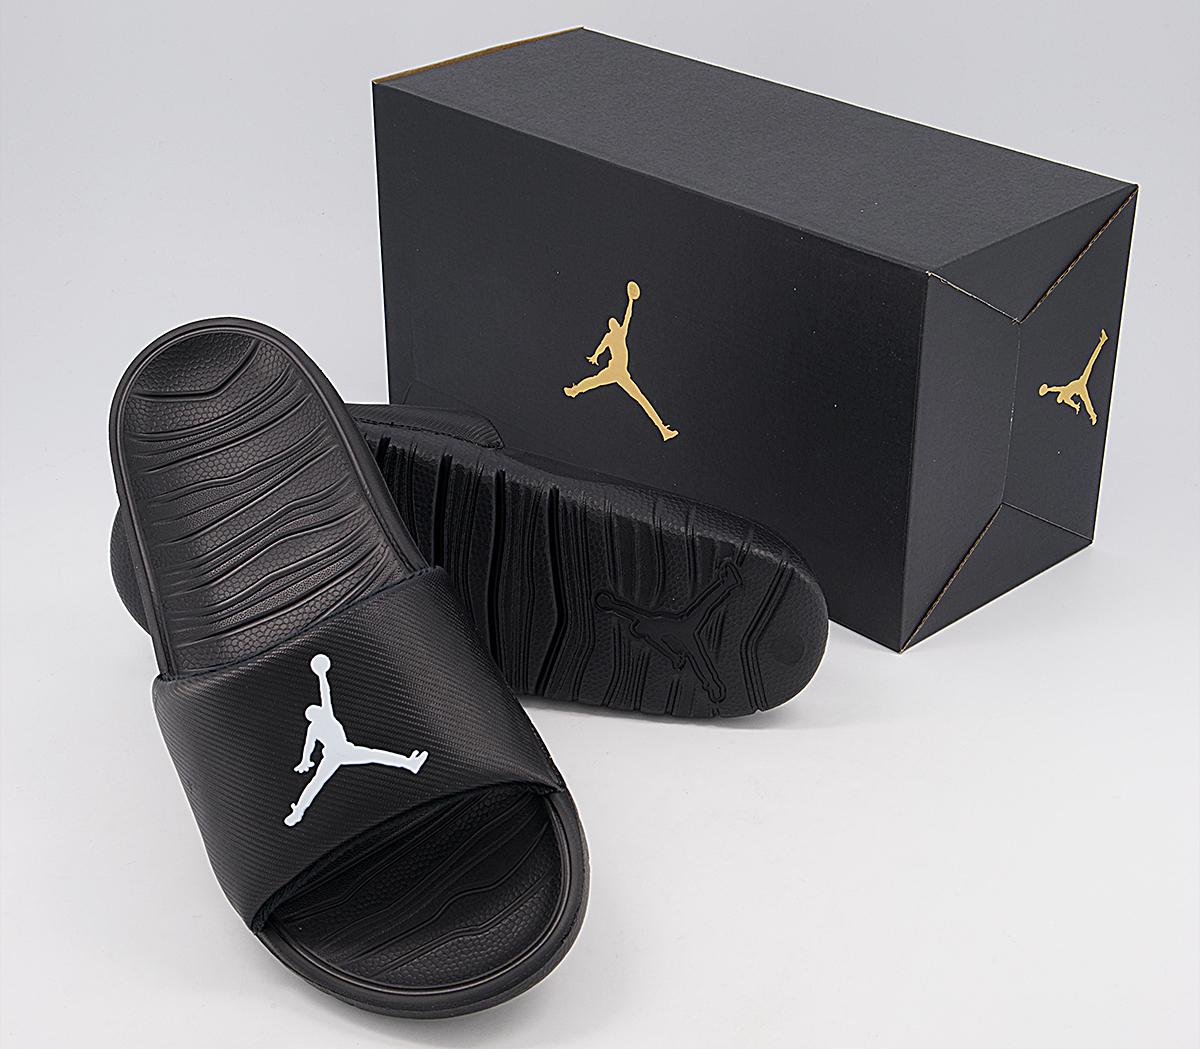 Jordan Jordan Break Slides Black White - Men’s Sandals